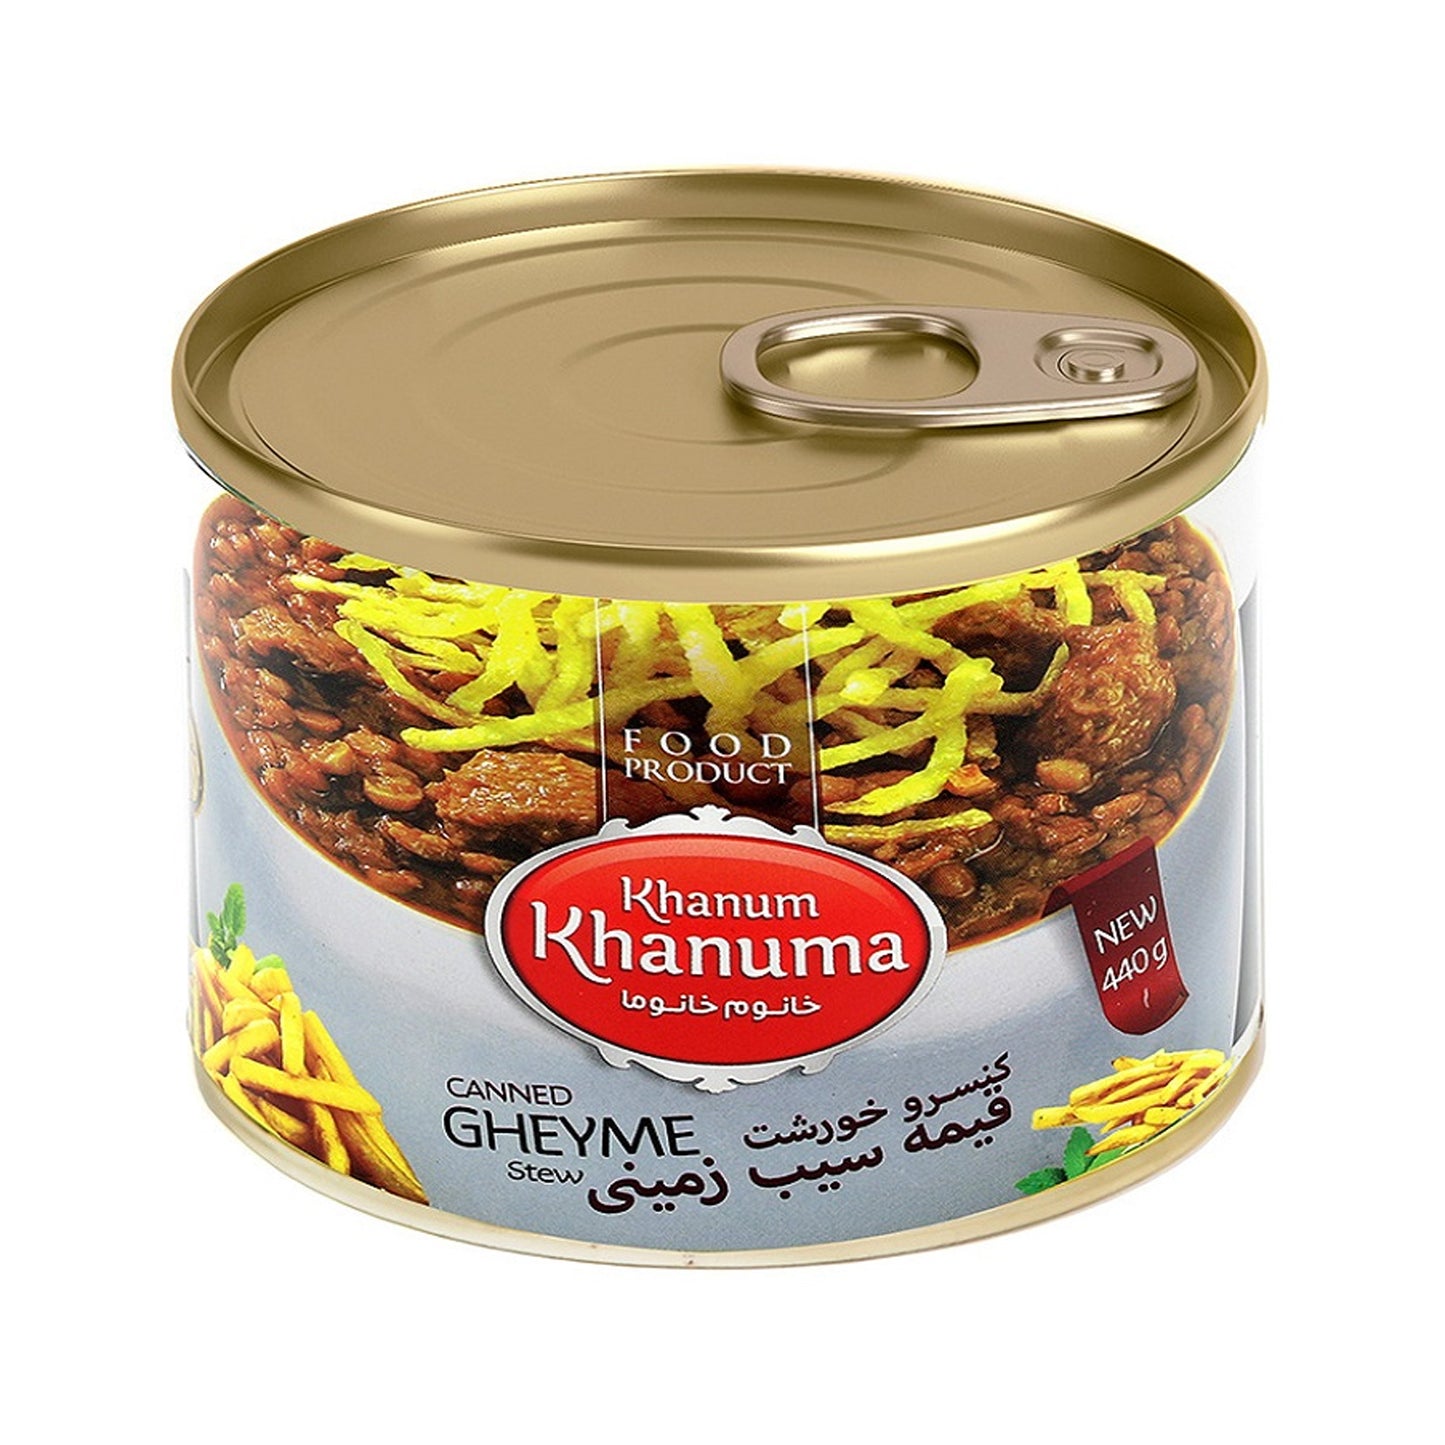 Khanum Khanuma Ganned Gheyme Stew 440g